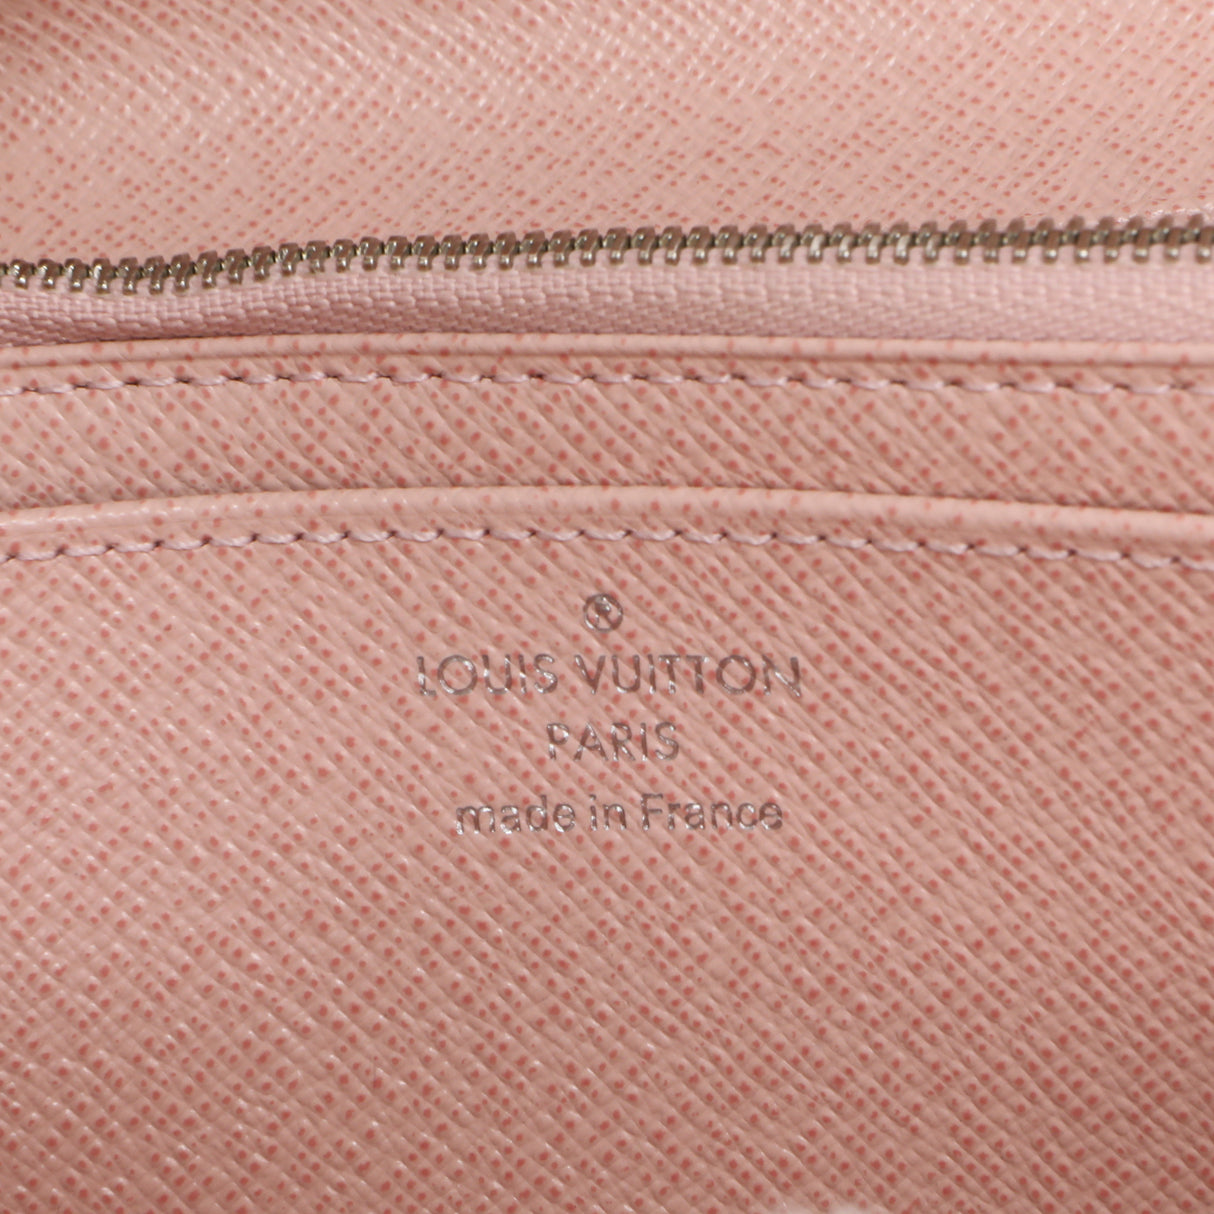 Louis Vuitton Rose Ballerine Epi Twist Wallet